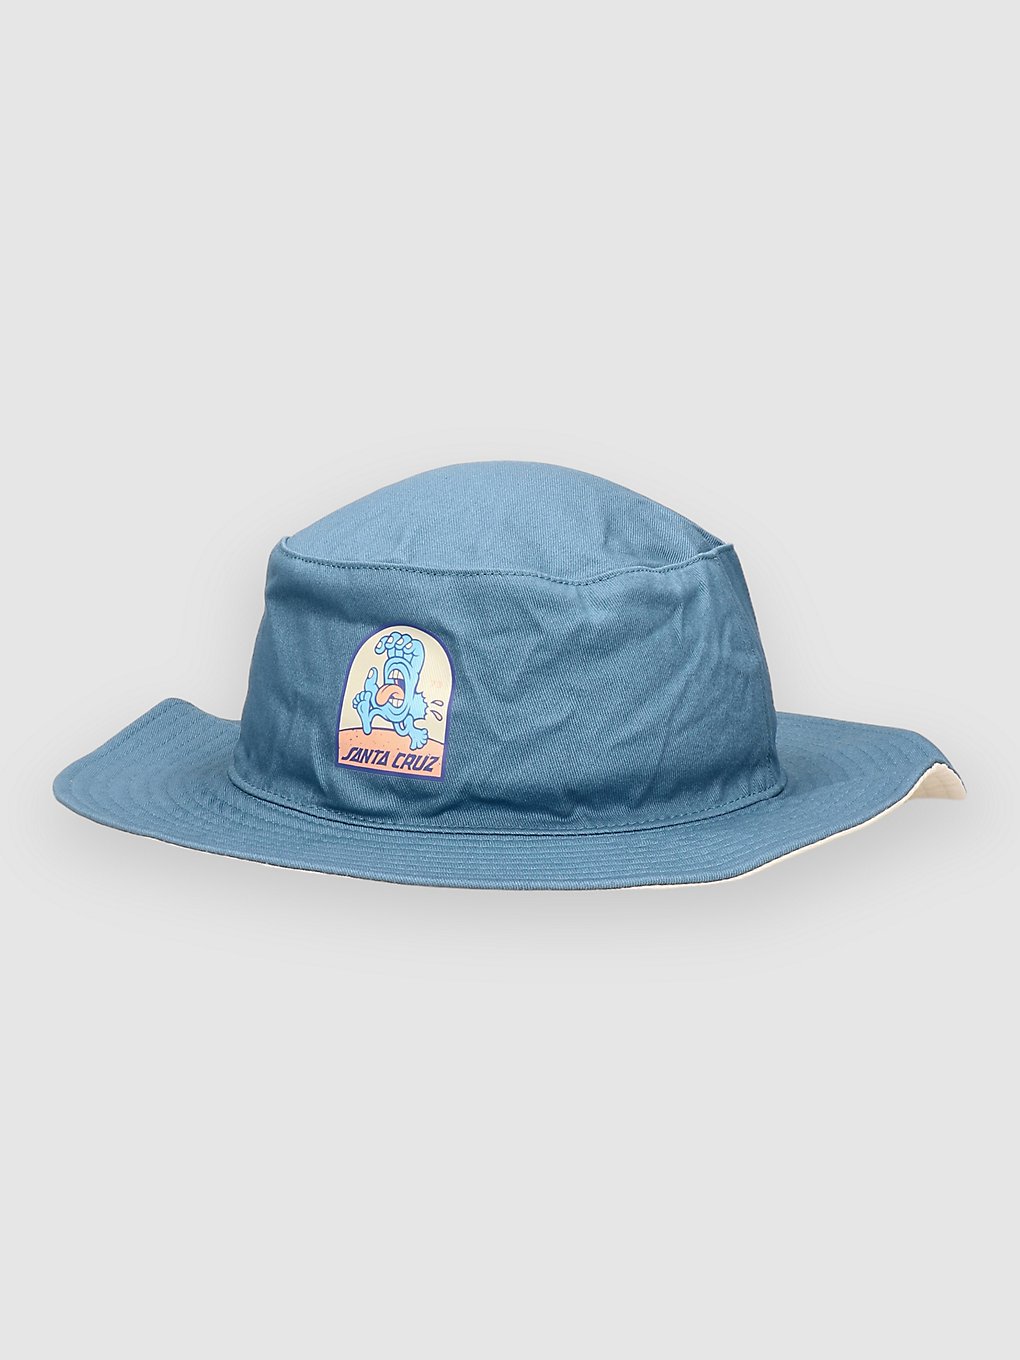 Santa Cruz Beach Bum Boonie Bucket Hat dusty blue kaufen